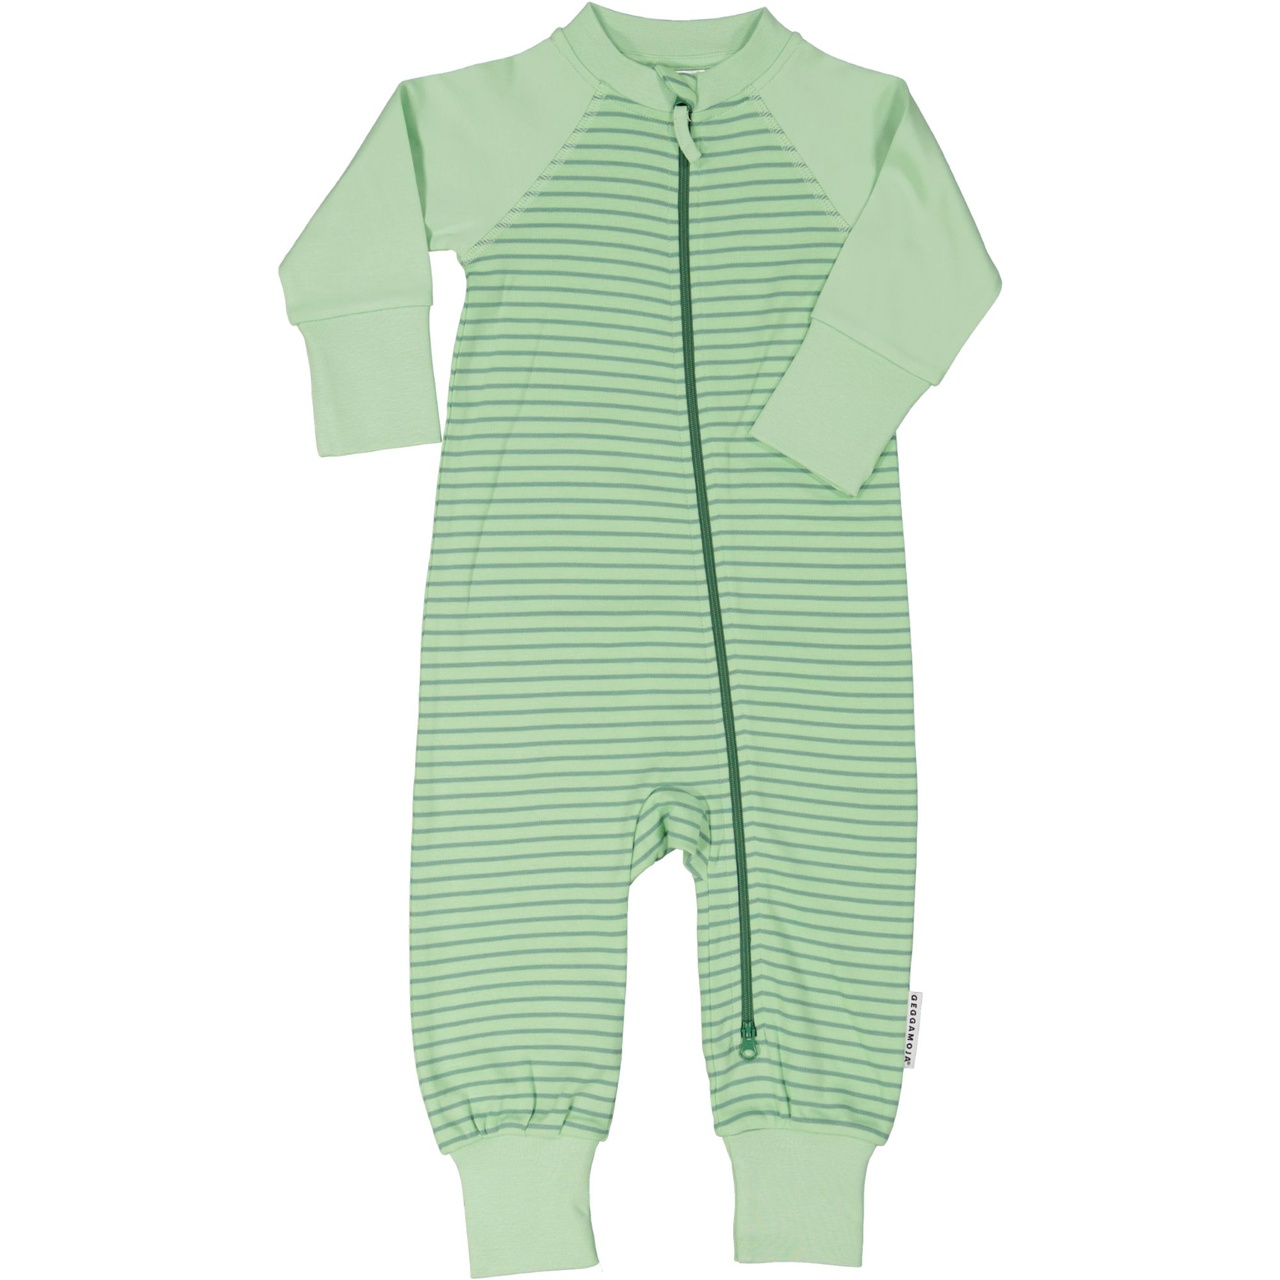 Pyjamas Ljusgrön/grön